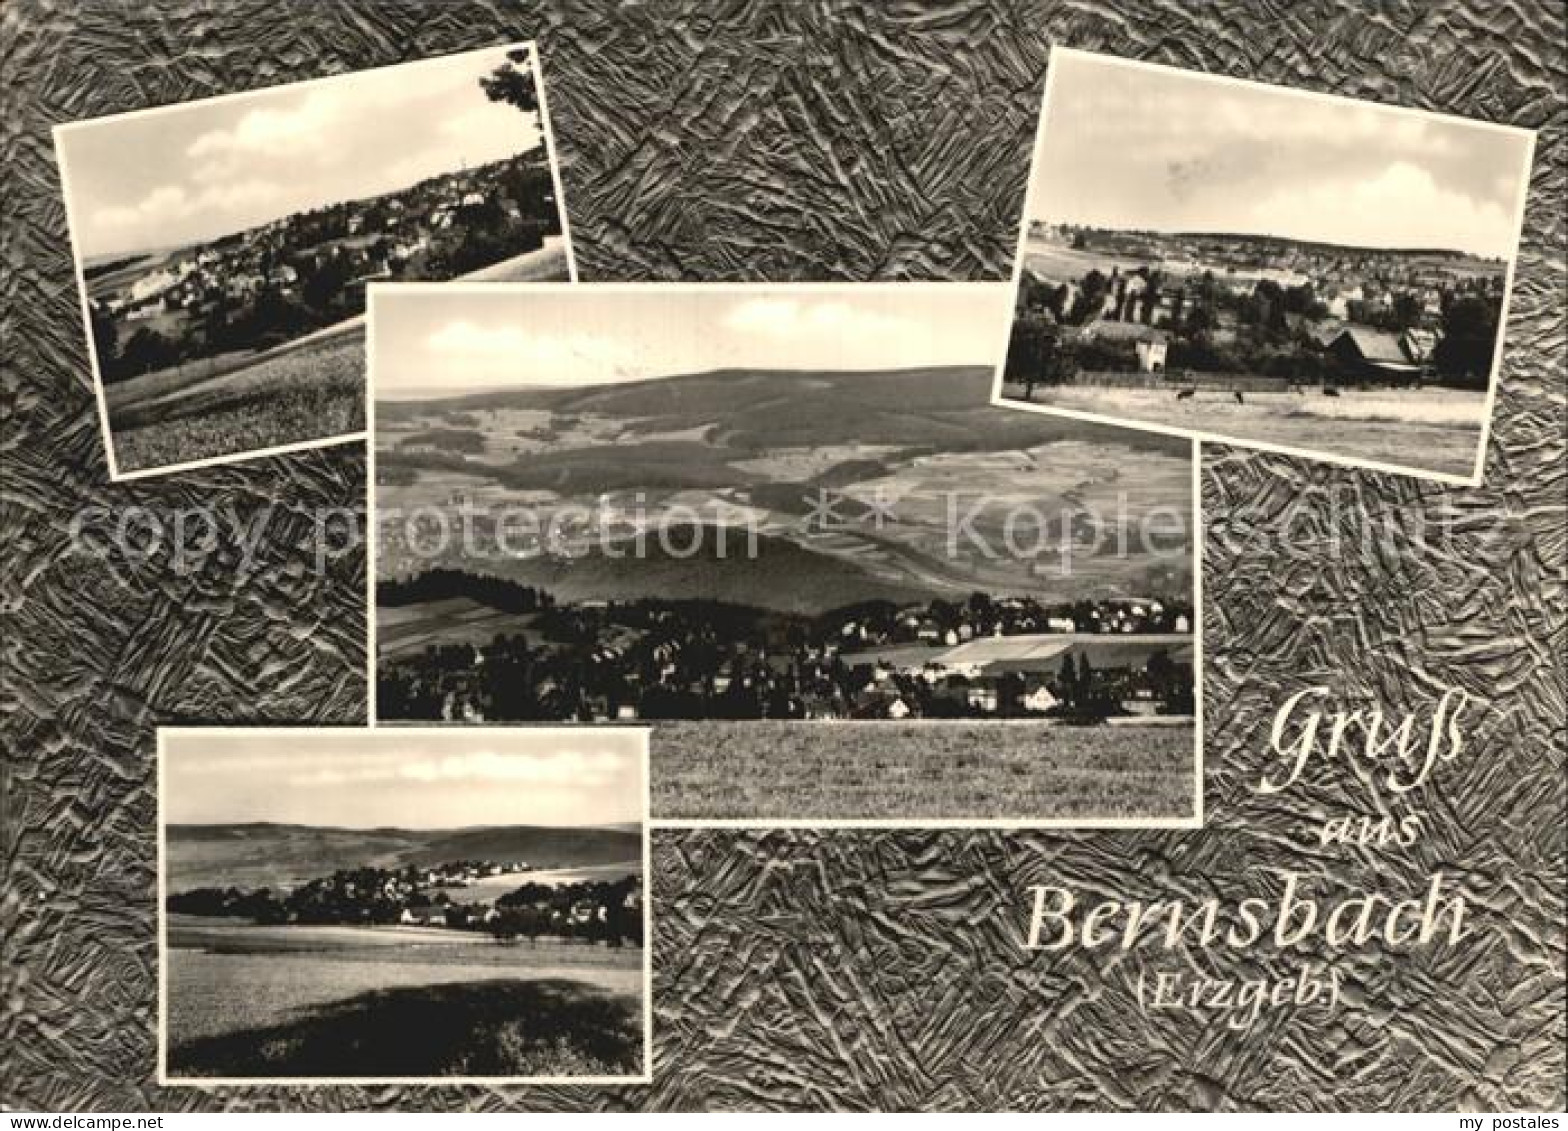 72396846 Bernsbach Ortsansichten  Bernsbach - Bernsbach